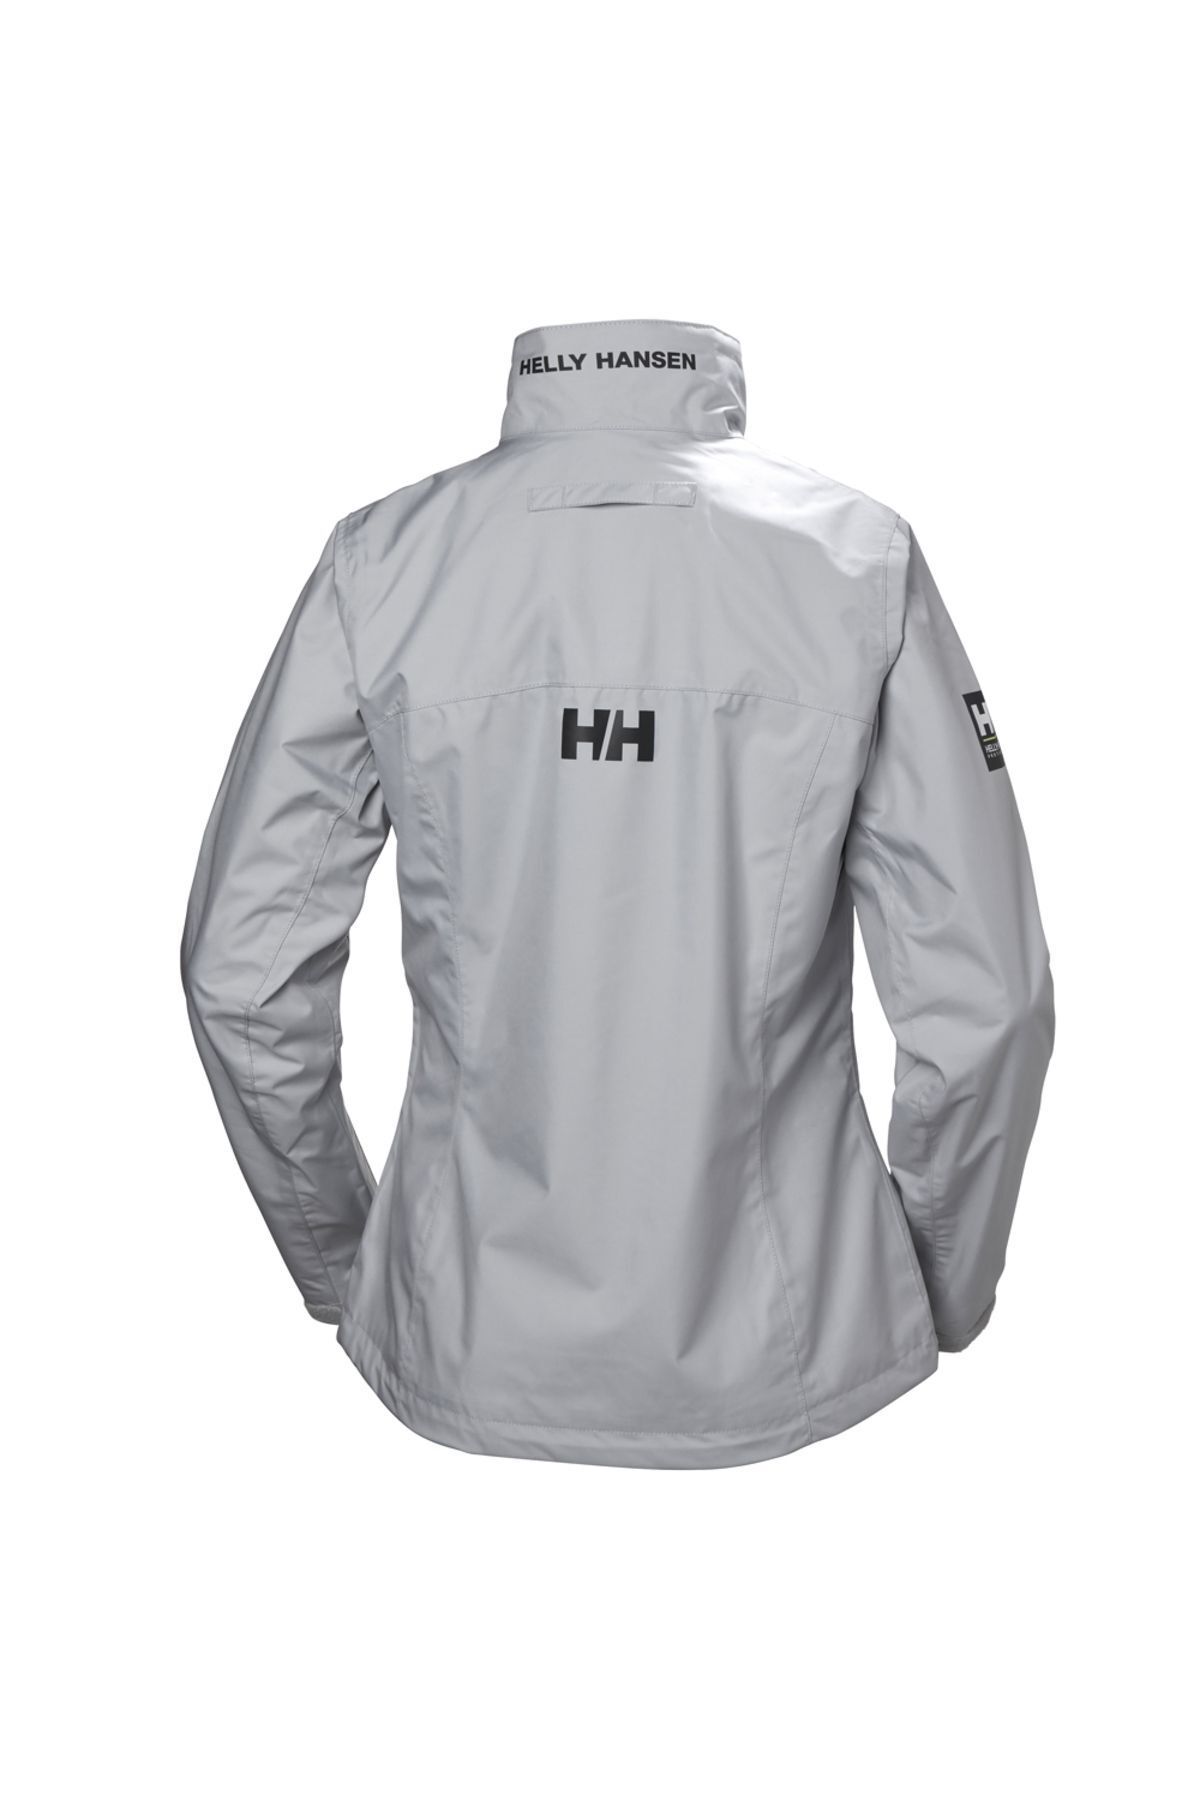 Helly Hansen W Crew Jacket